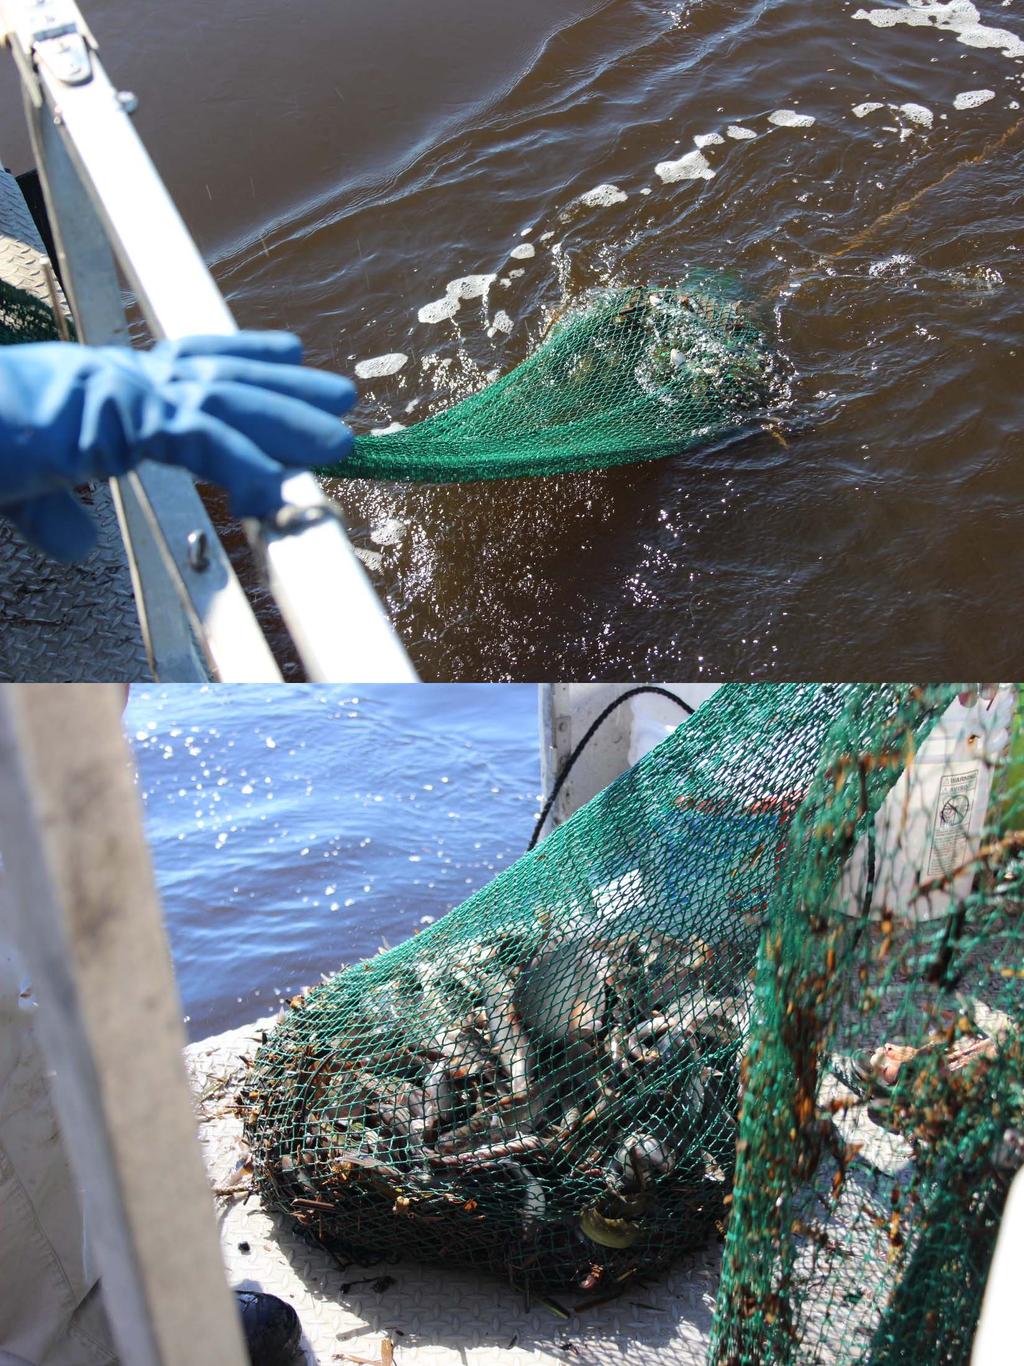 P26: Retrieving the Trawl Net